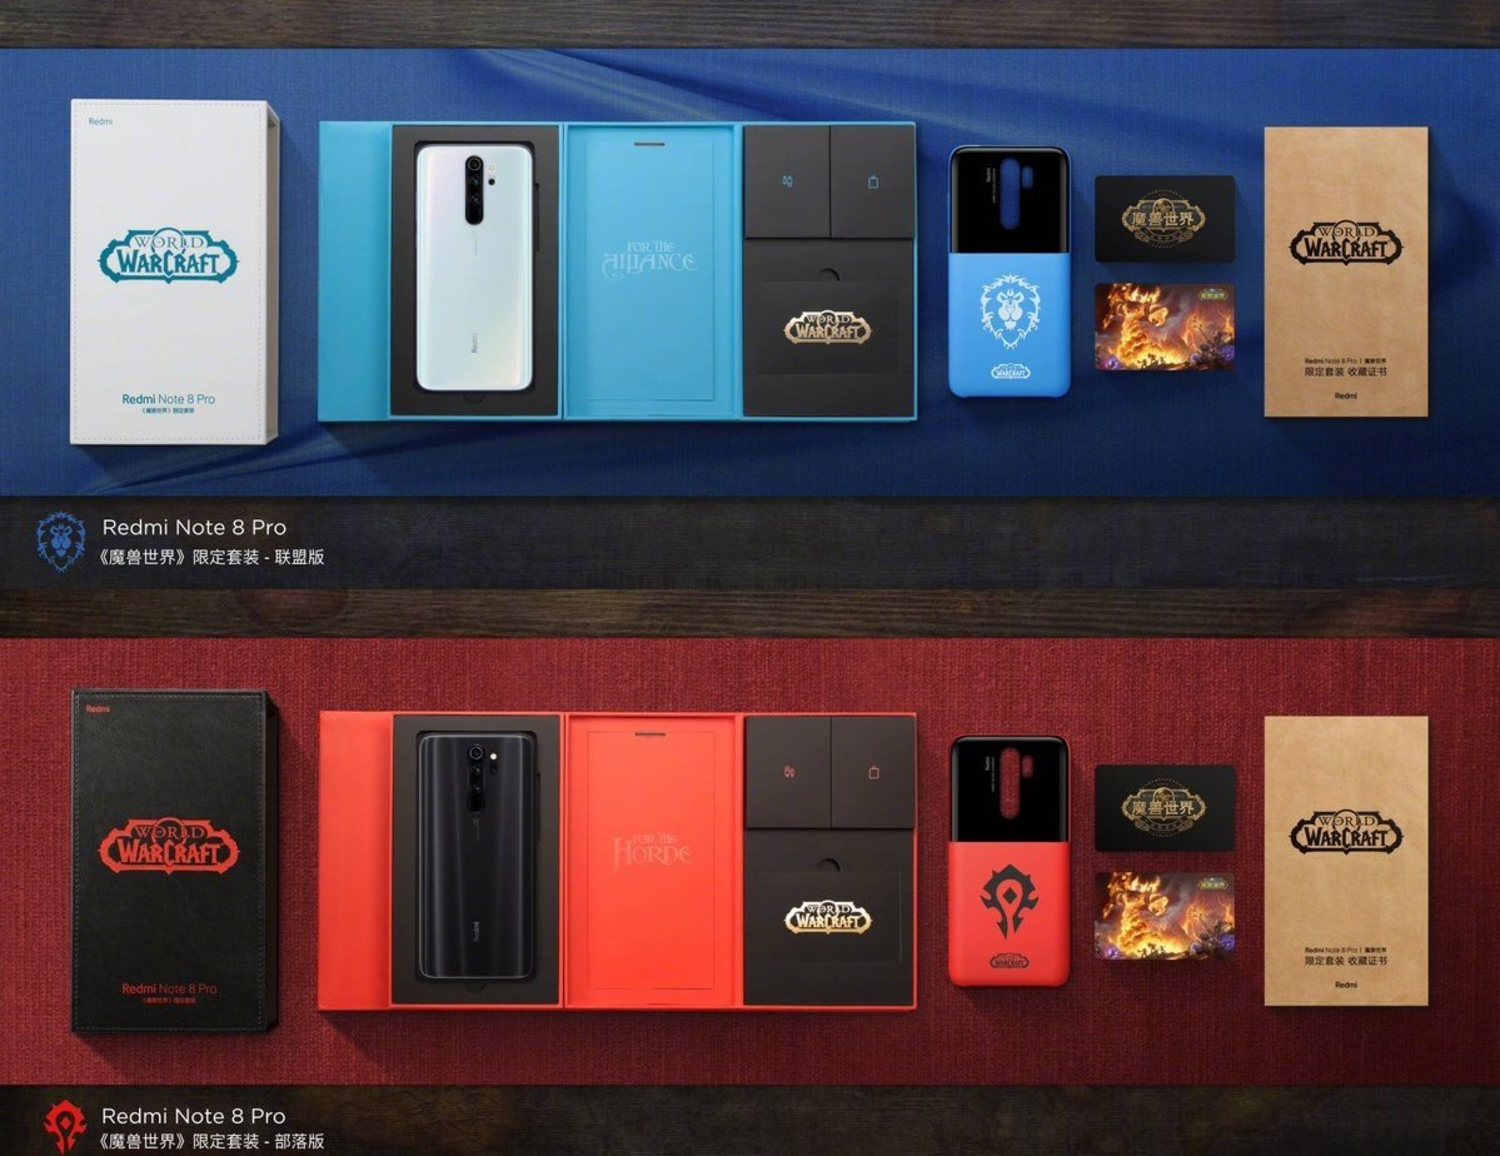 Redmi Note 8 akan datang dengan dua edisi khusus World of Warcraft, satu dengan warna biru (di atas) dan satu dengan warna merah (di bawah)